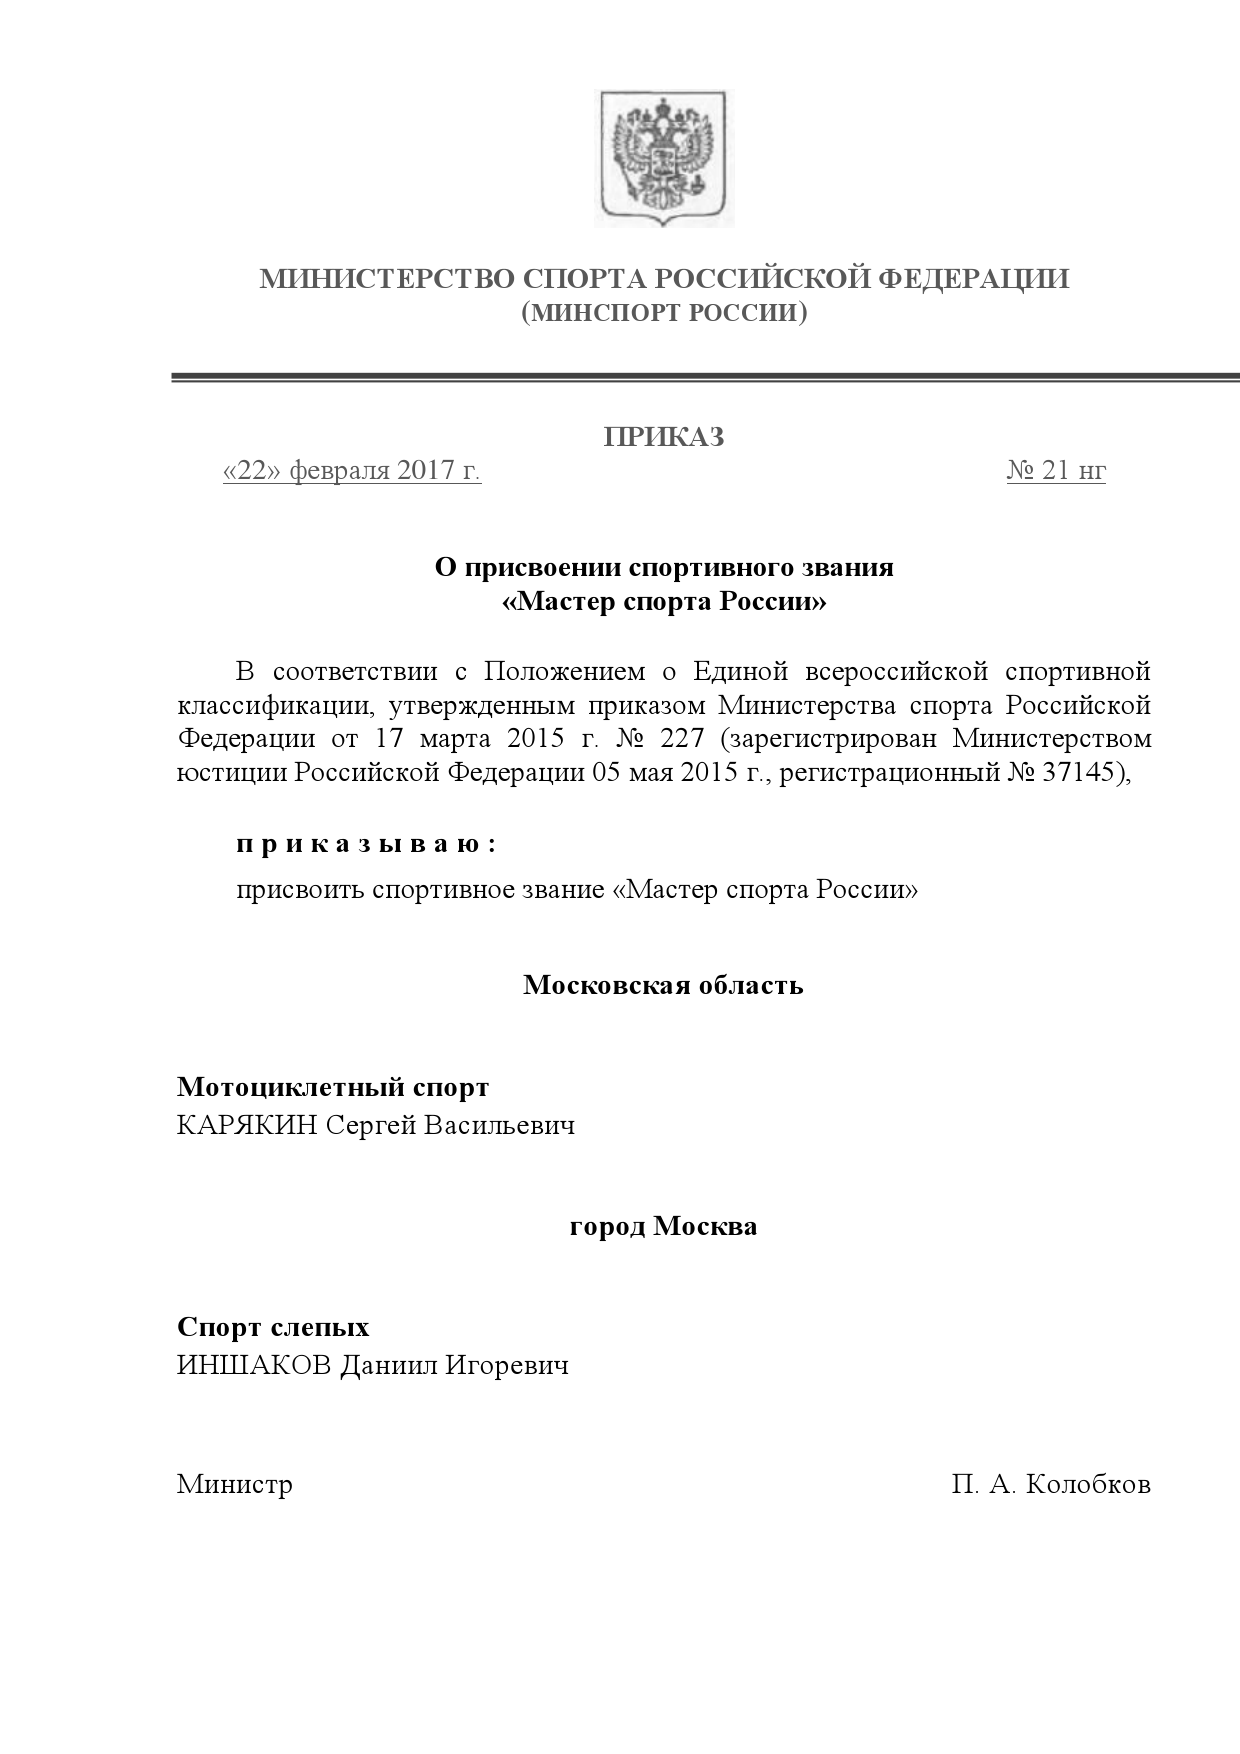 Приказ о присвоении звания МС Сергею Васильевичу Карякину